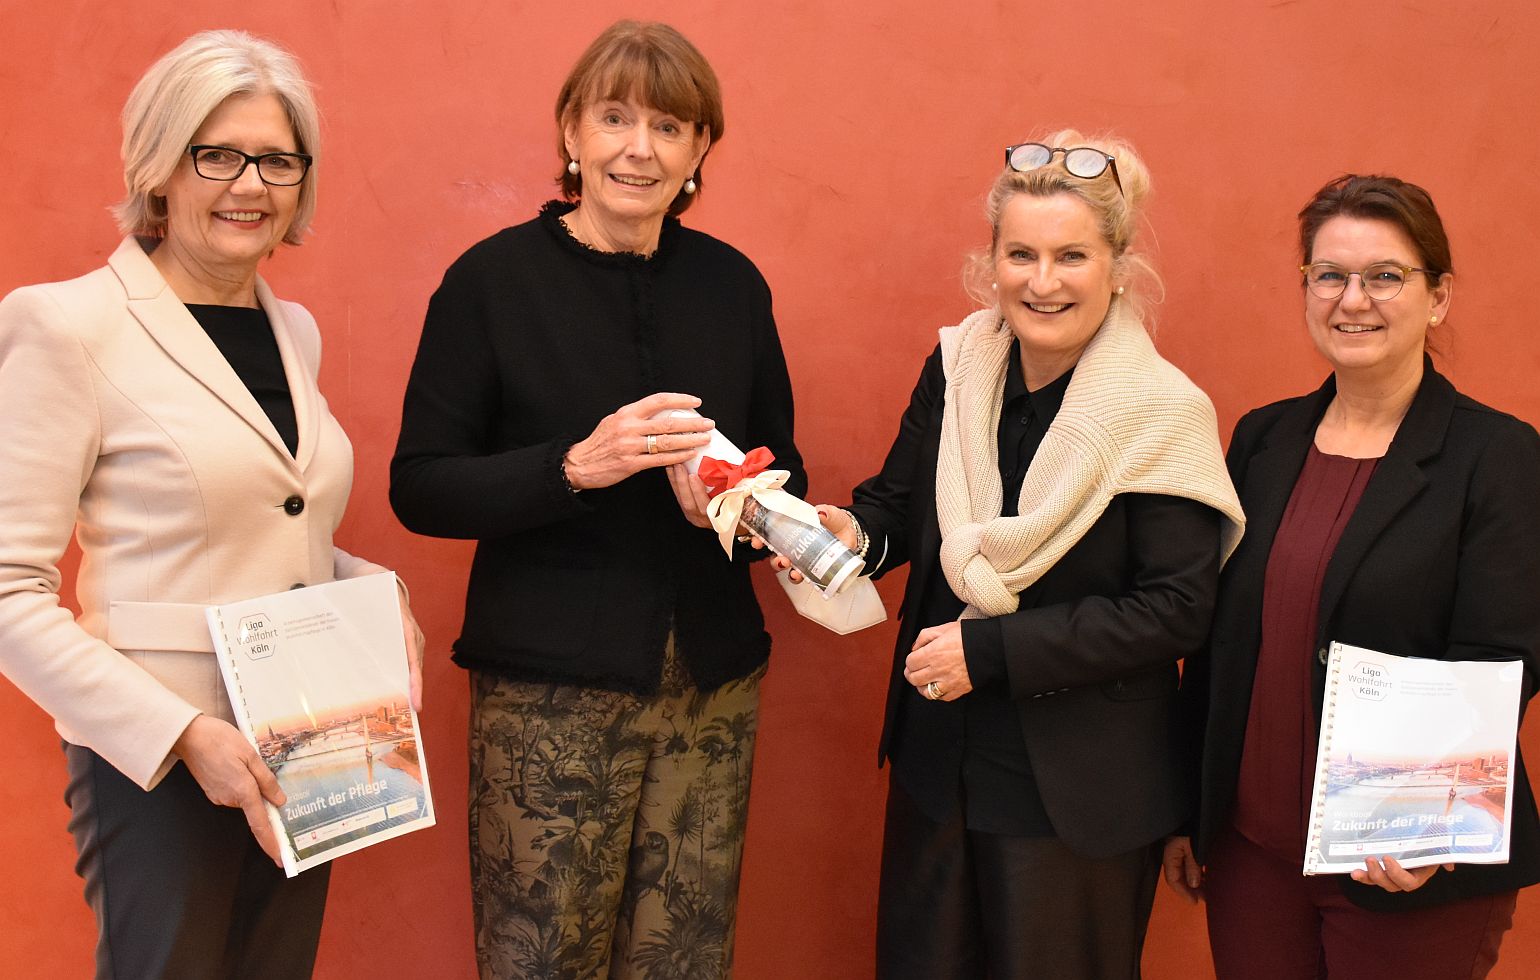 Gruppenbild bei der Übergabe des Workbooks (von links): Gabriele Patzke (SBK), Oberbürgermeisterin Henriette Reker, Ulli Volland-Dörmann (AWO) und Martina Schönhals (Diakonie).